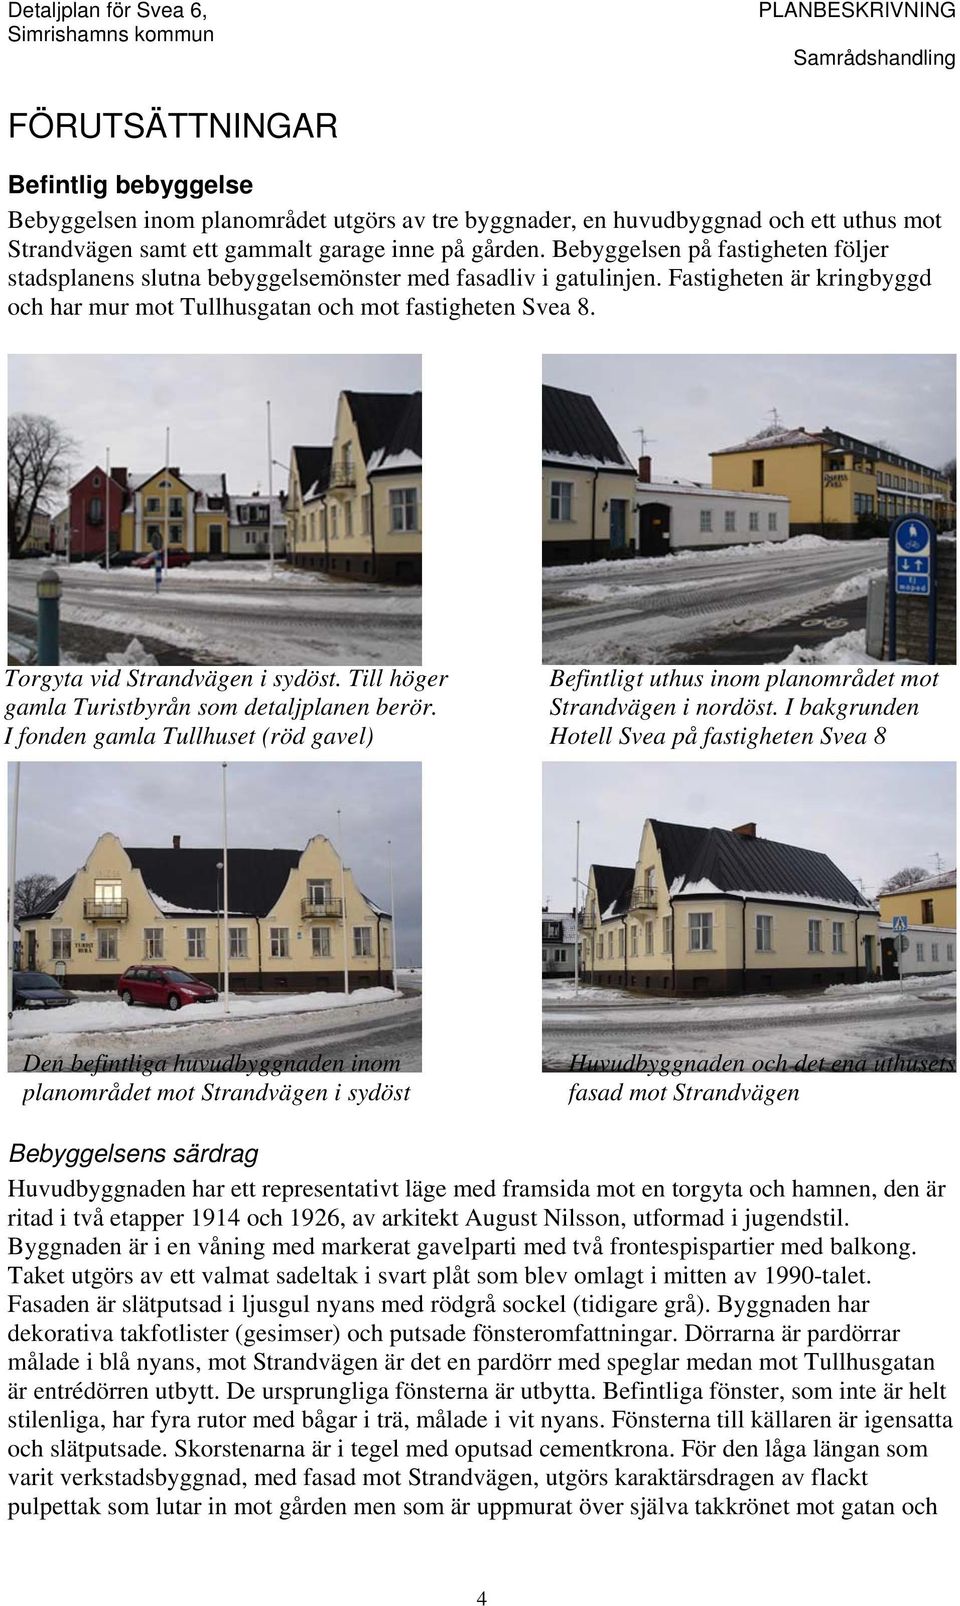 Detaljplan för Svea 6, Simrishamn, Simrishamns kommun, Skåne län - PDF  Gratis nedladdning